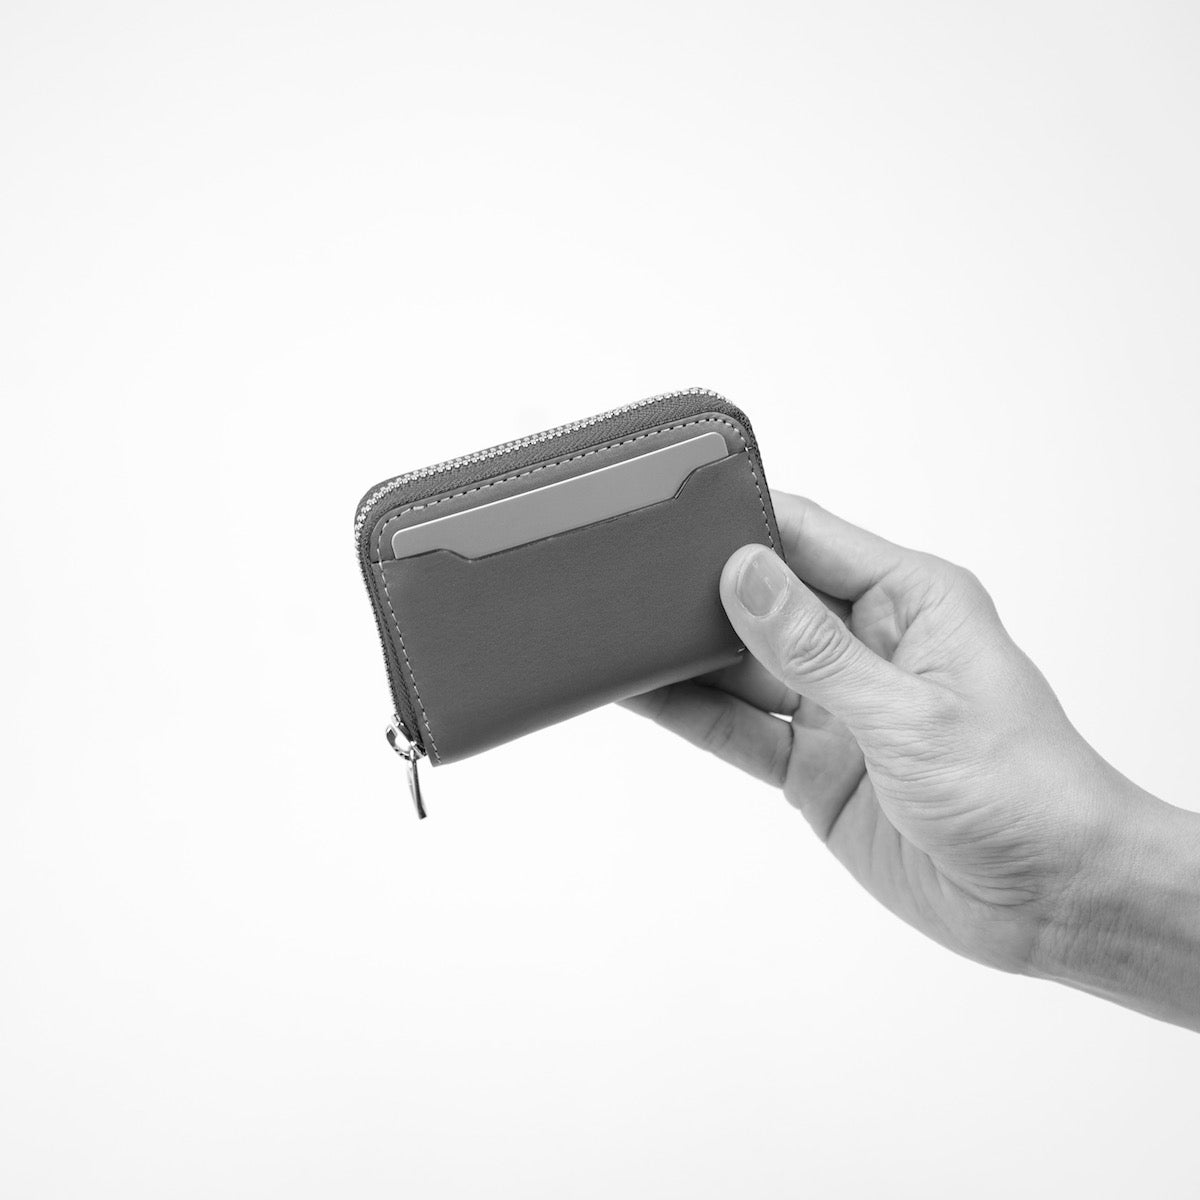 ITTI (イッチ) | CRISTY COIN CARD WLT / DIPLO FJORD(クリスティコインカードウォレット/ディプロフィヨルド)本革 レザー メンズ レディース ミニ財布 さいふ サイフ キャッシュレス